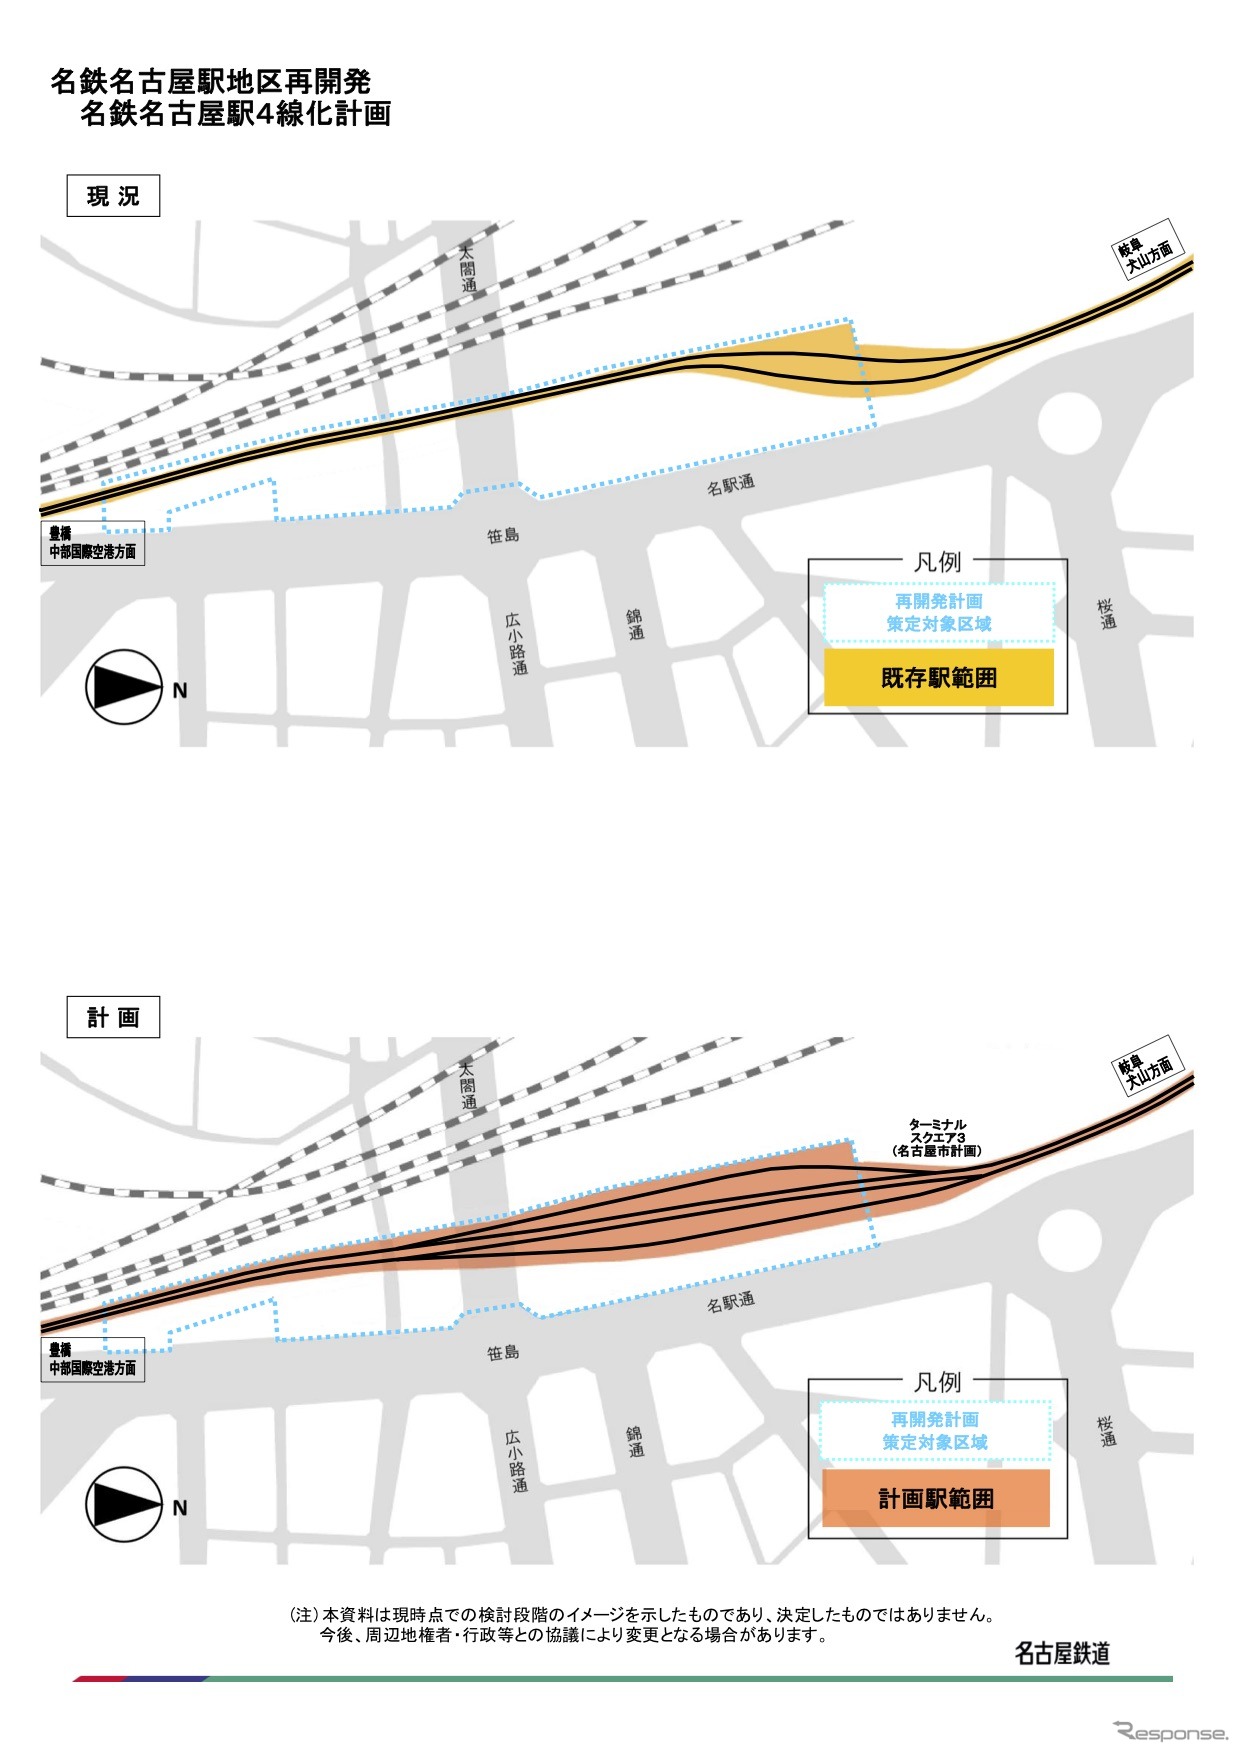 名鉄名古屋駅の再開発に伴なう4線化計画の概要。